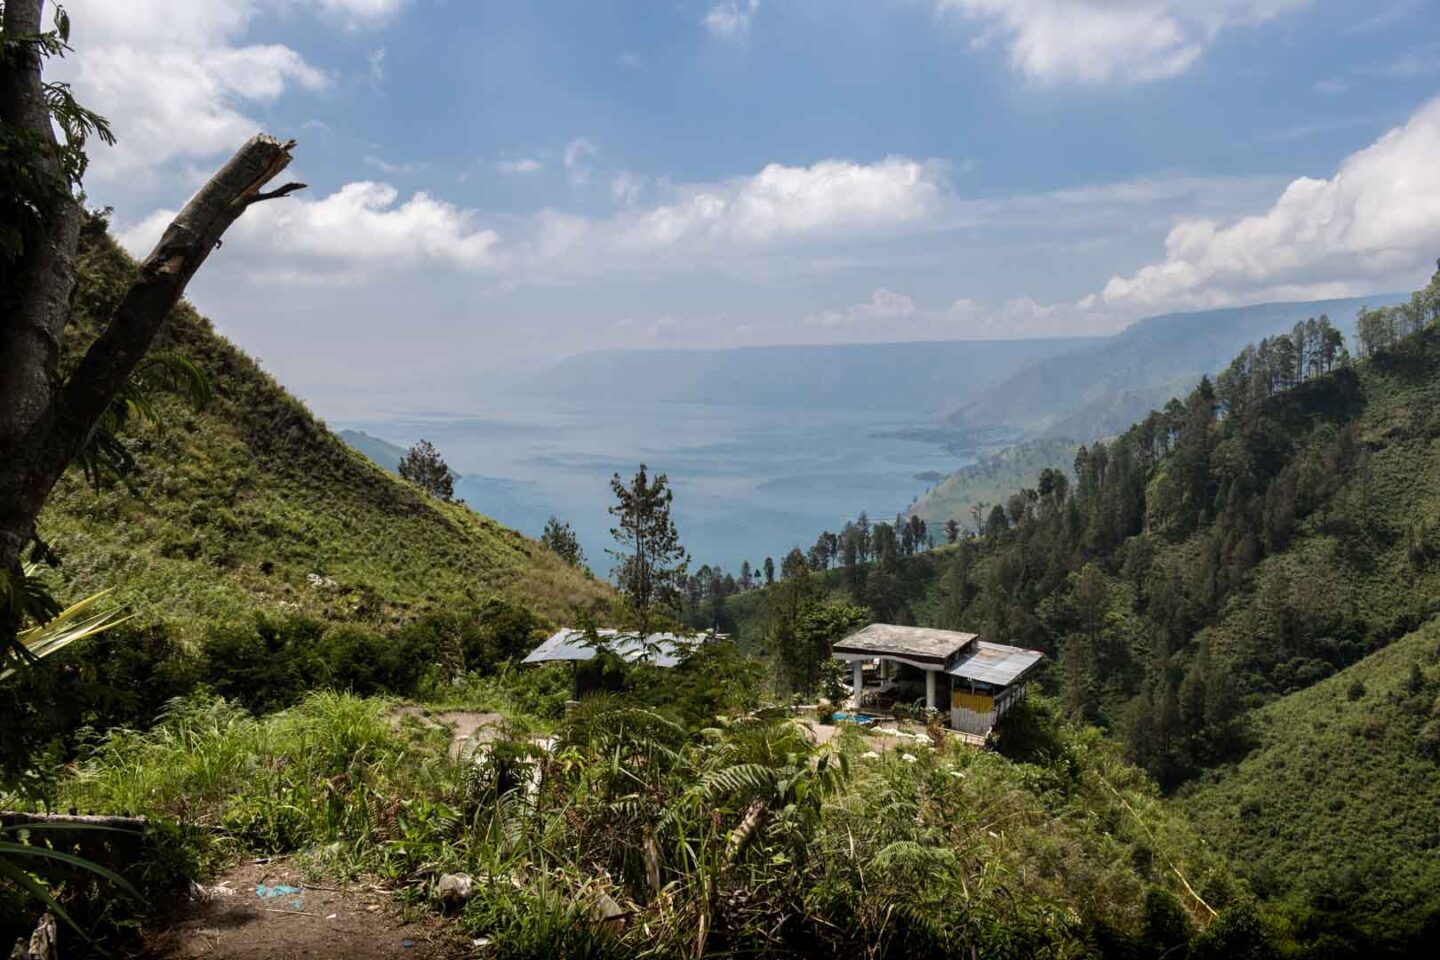 Lake Toba viewpoint in Sumatra